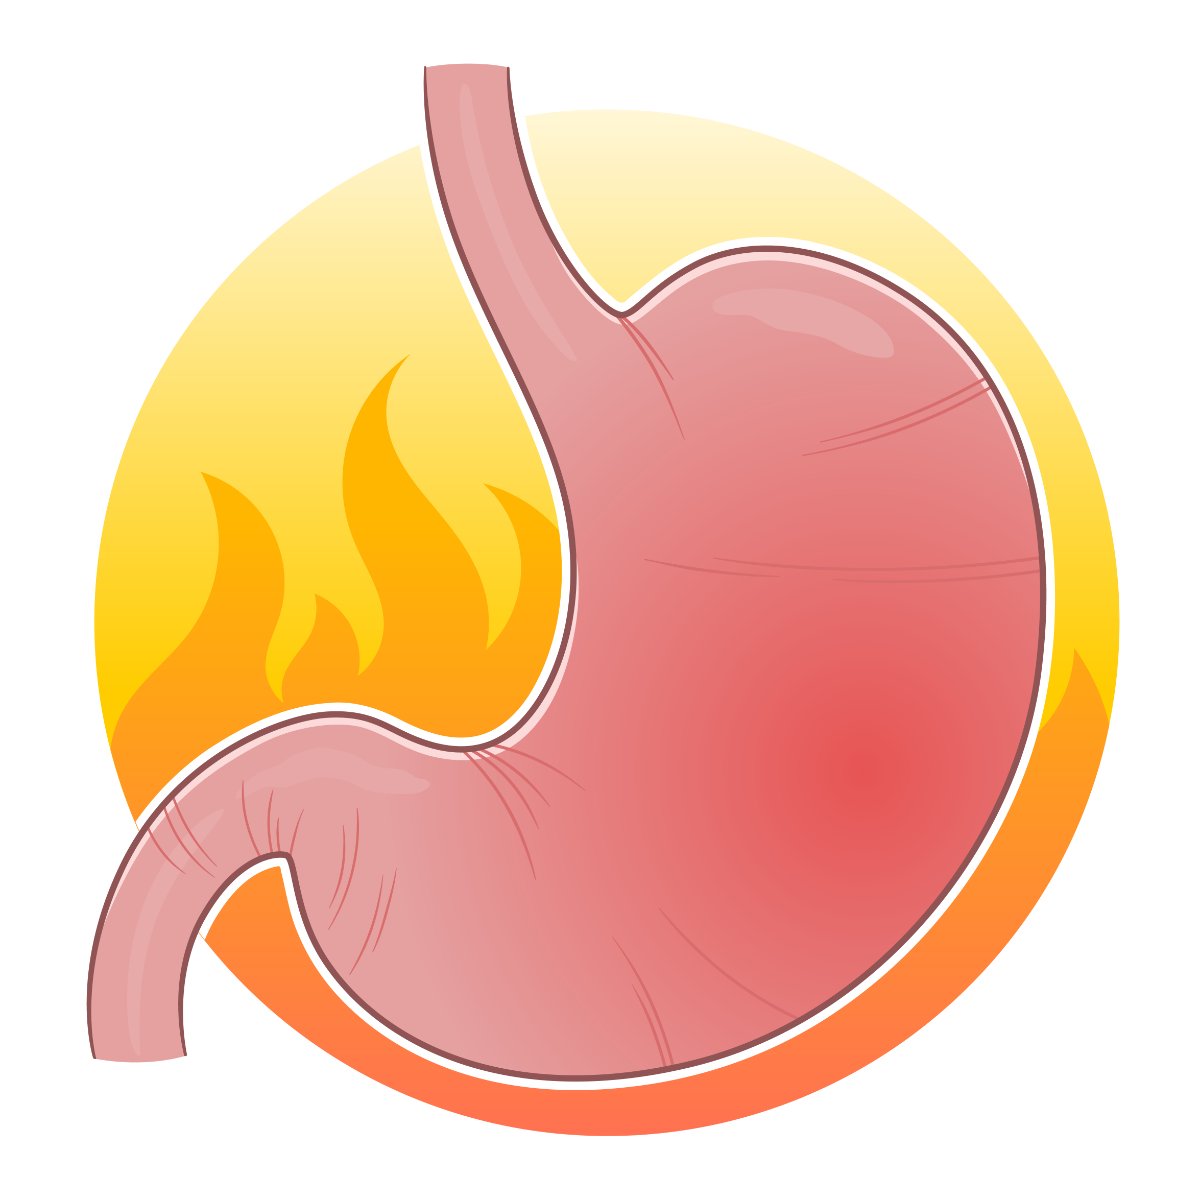 Le RGO ou reflux gastro-œsophagien est une maladie bénigne qui se caractérise par une remontée acide de l’estomac vers l’œsophage.